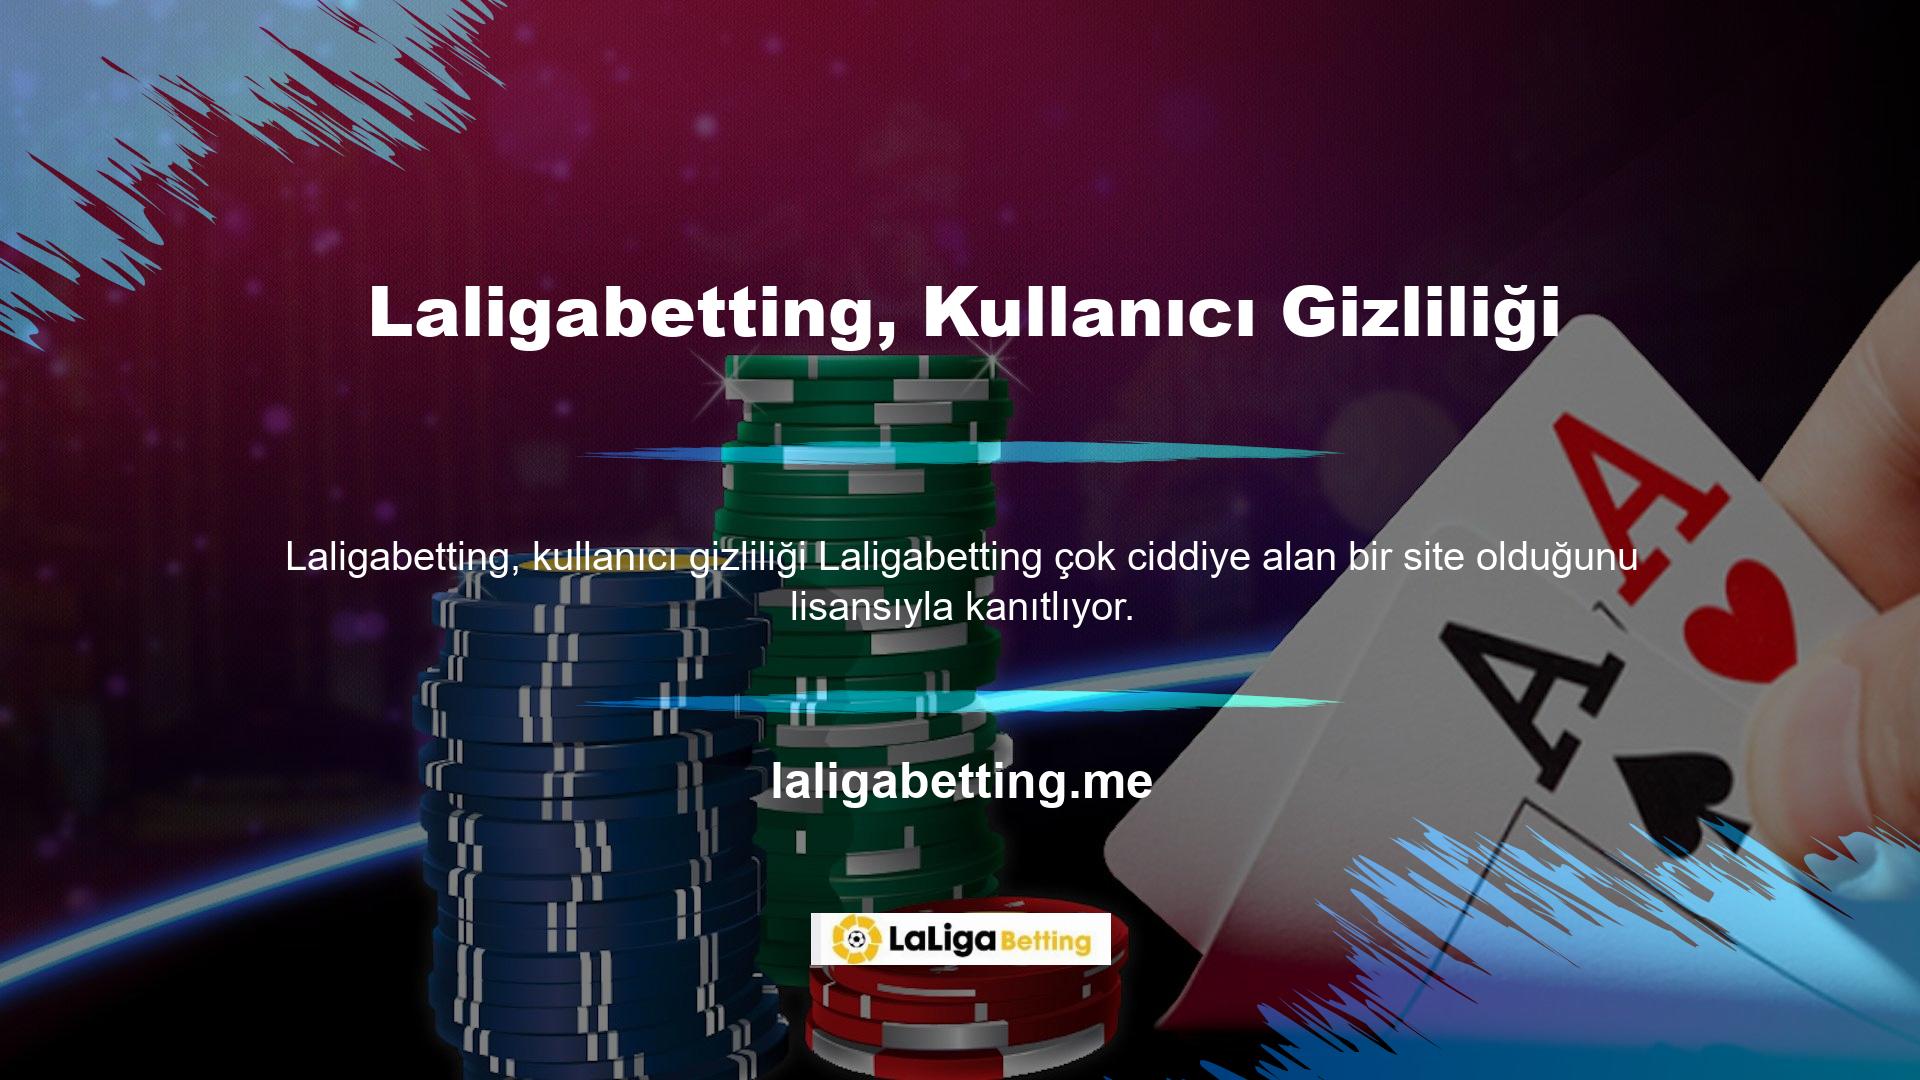 Casino siteleri Türkiye'de hizmet sunarken giriş engelleriyle karşı karşıya kalmaktadır